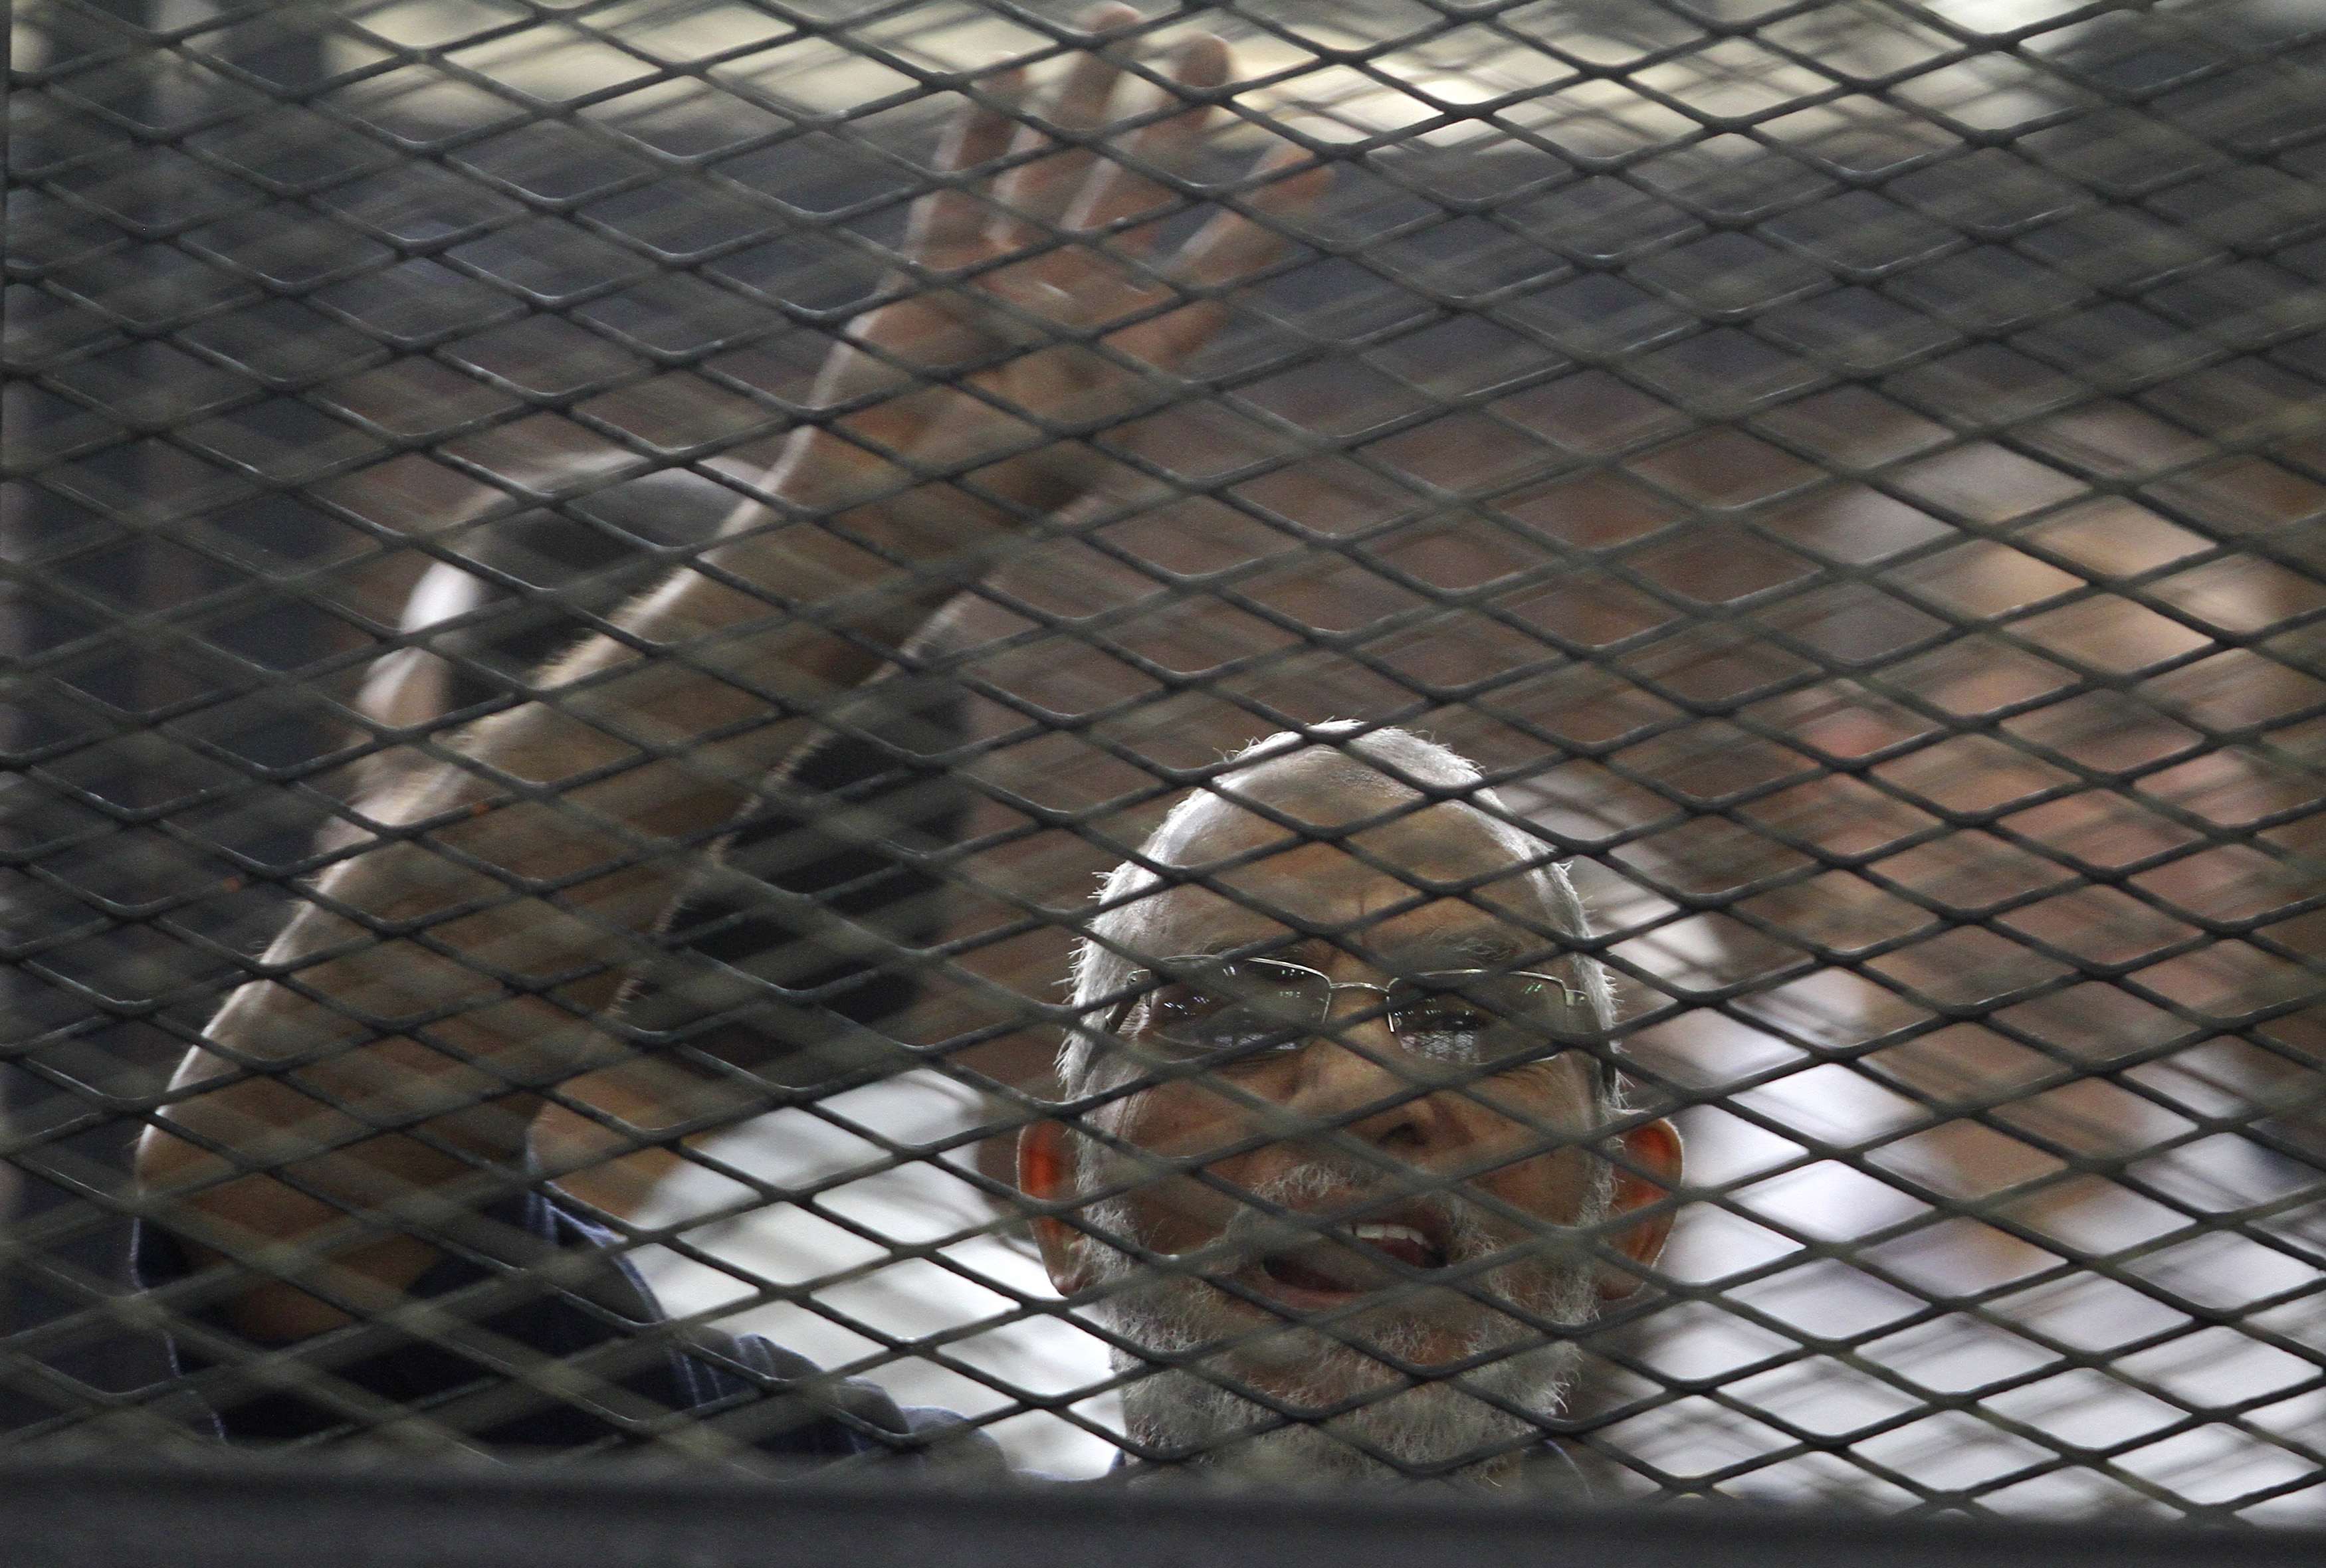 Αίγυπτος: Ισόβια καταδίκη για τον ηγέτη της Μουσουλμανικής Αδελφότητας